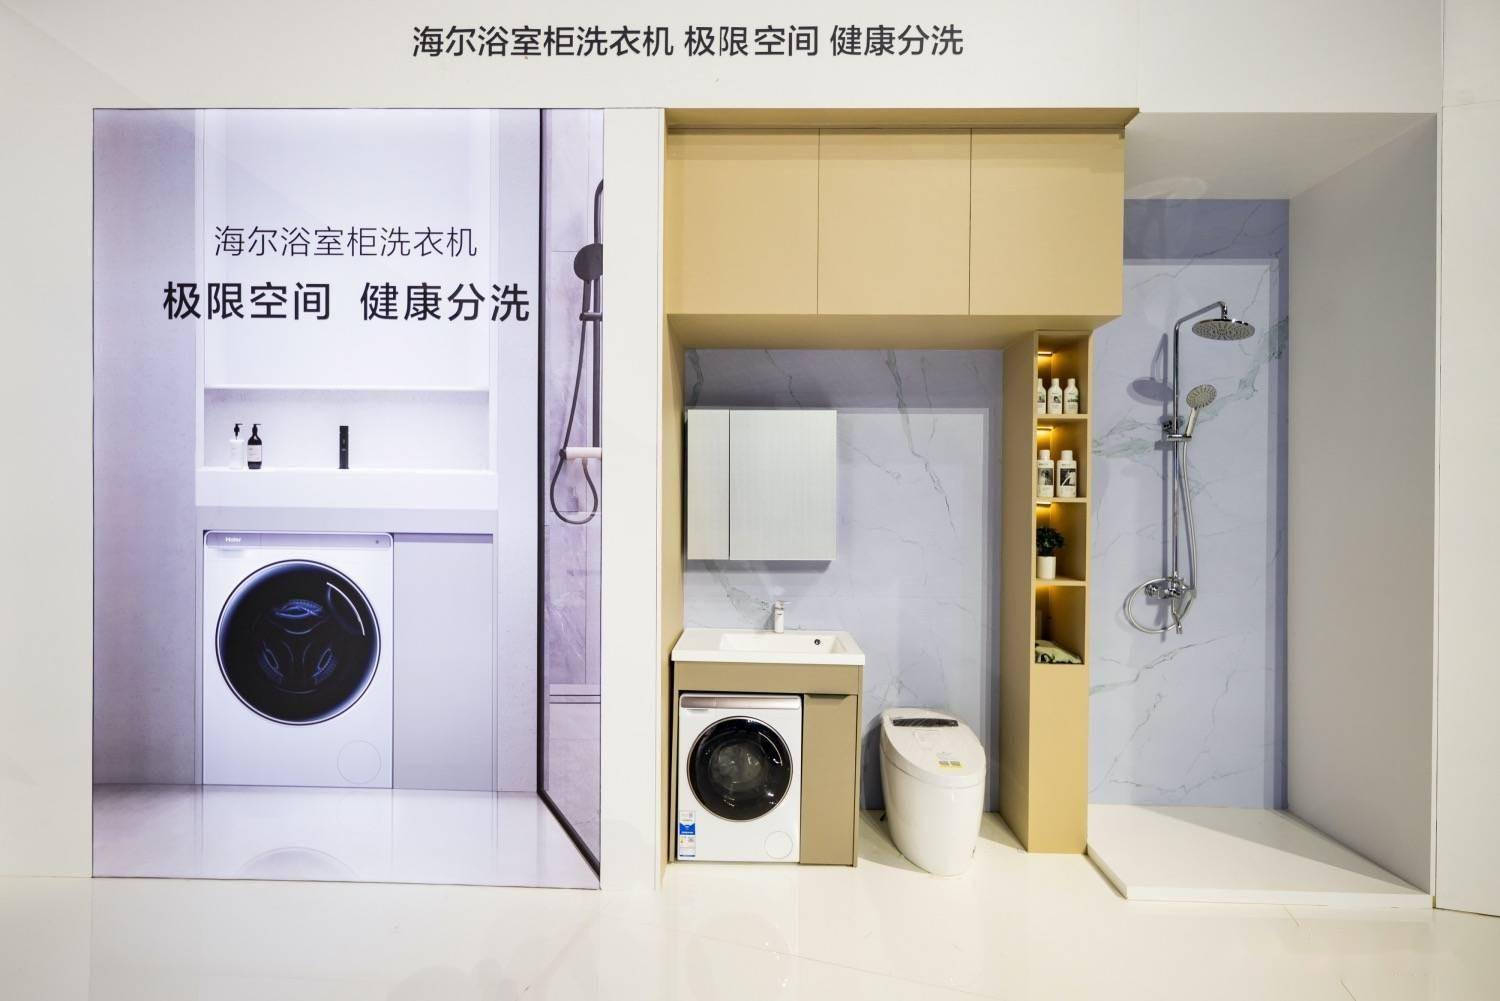 海尔洗衣机:不为客户进多少货,只为创造更多用户